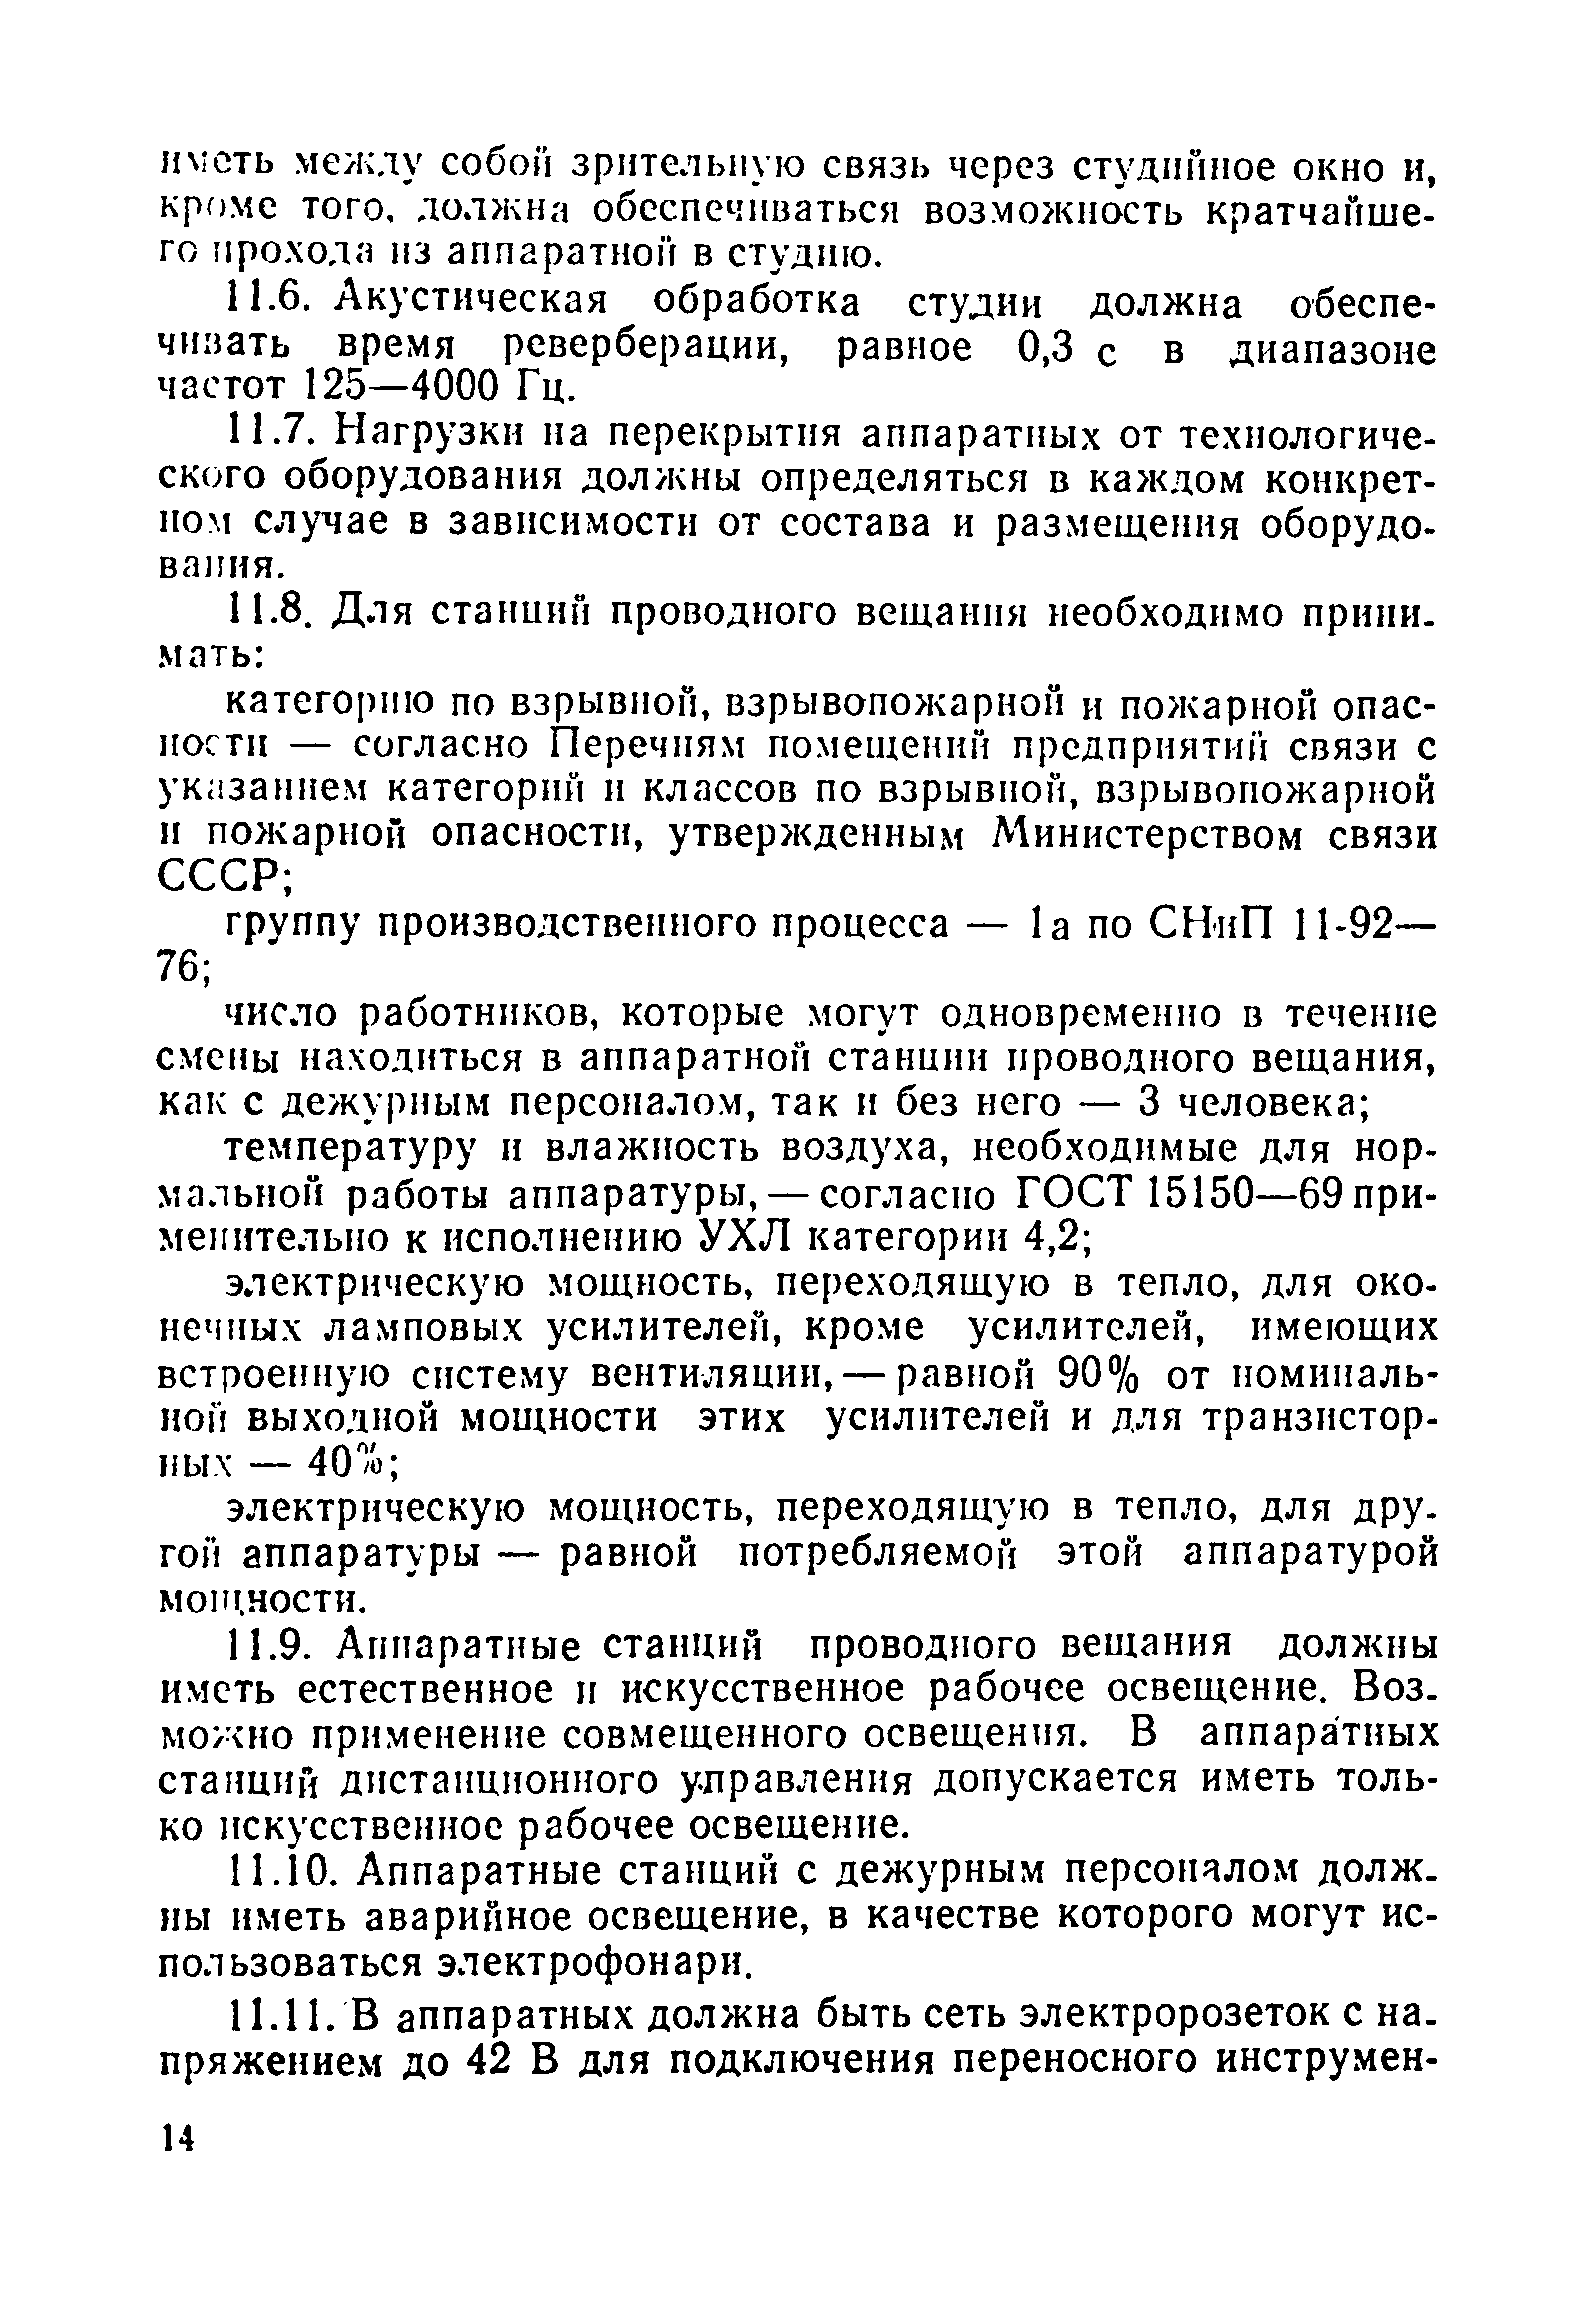 ВНТП 114-93